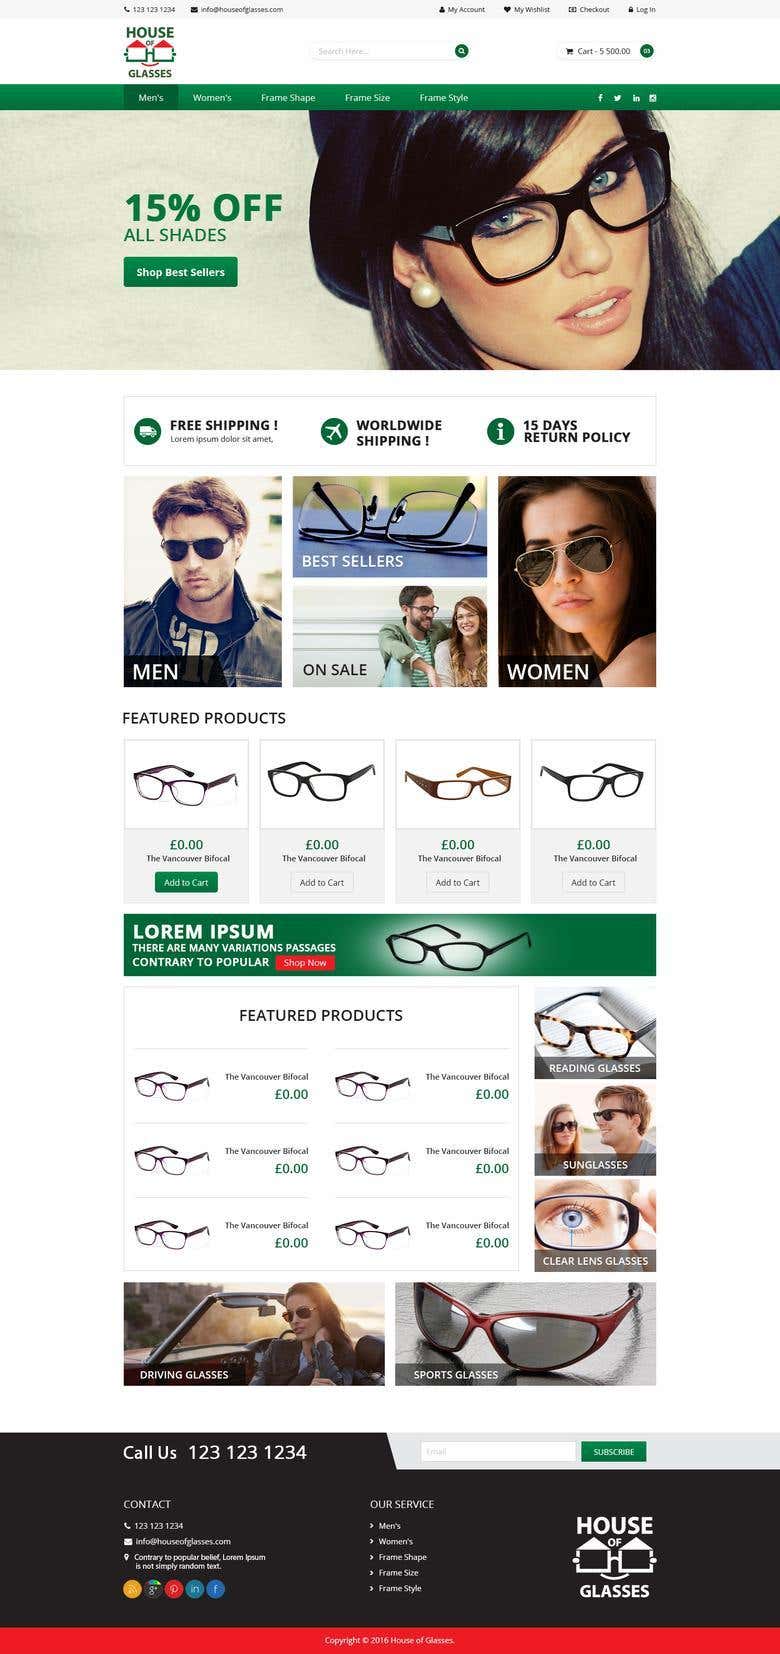 Website for House of Glasses